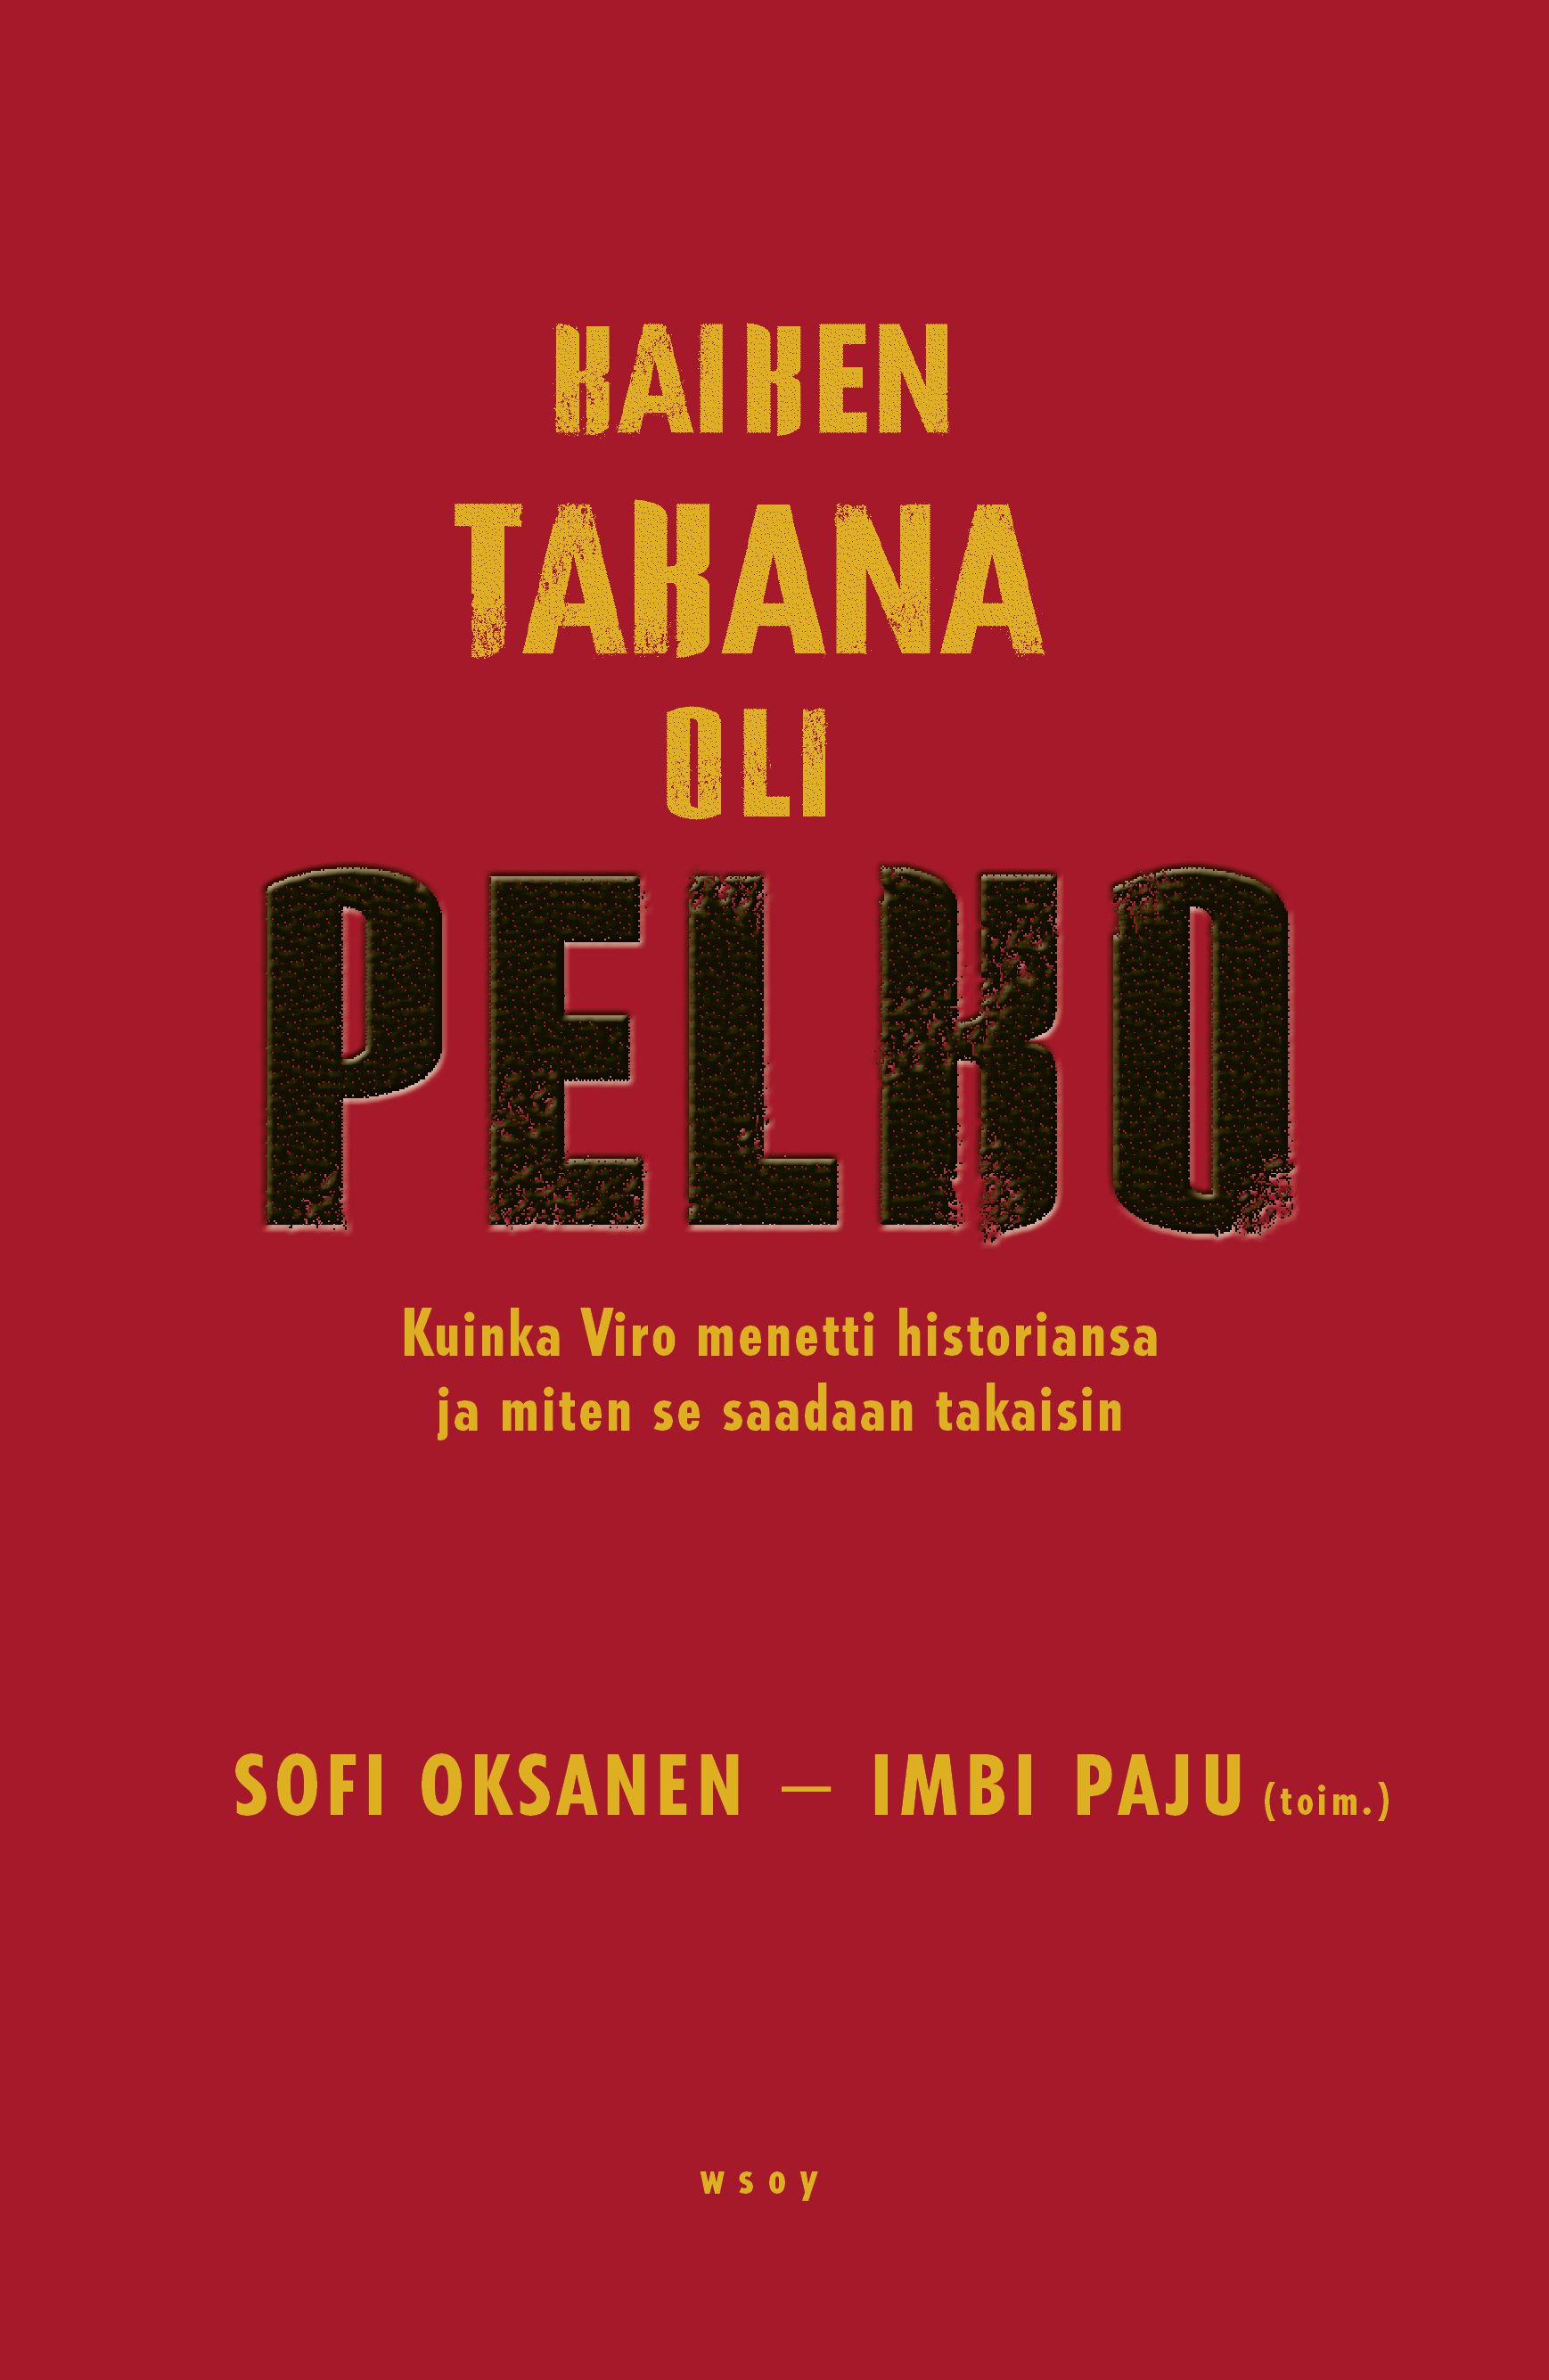 Kirjailijan Sofi / Paju Oksanen uusi kirja Kaiken takana oli pelko : kuinka Viro menetti historiansa ja miten se saadaan takaisin (UUSI)